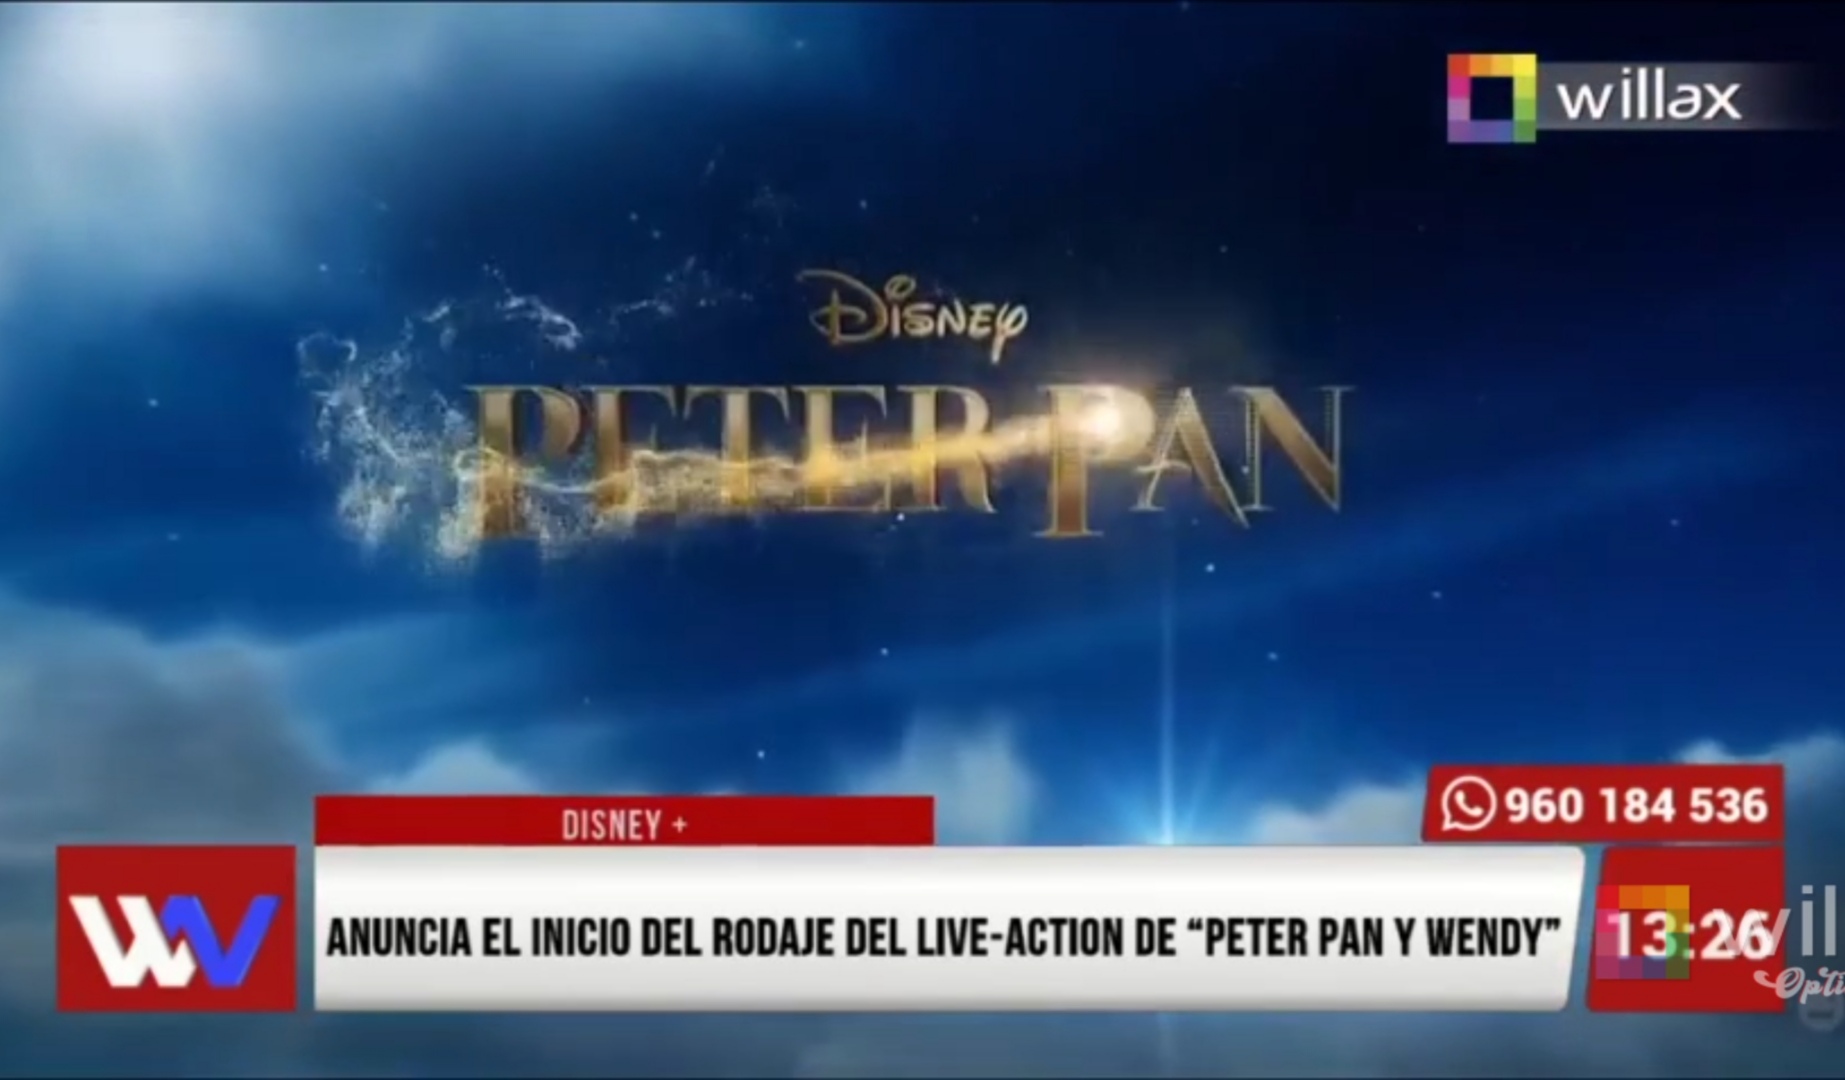 Disney+ anuncia el inicio del rodaje del live- action de “Peter Pan y Wendy”